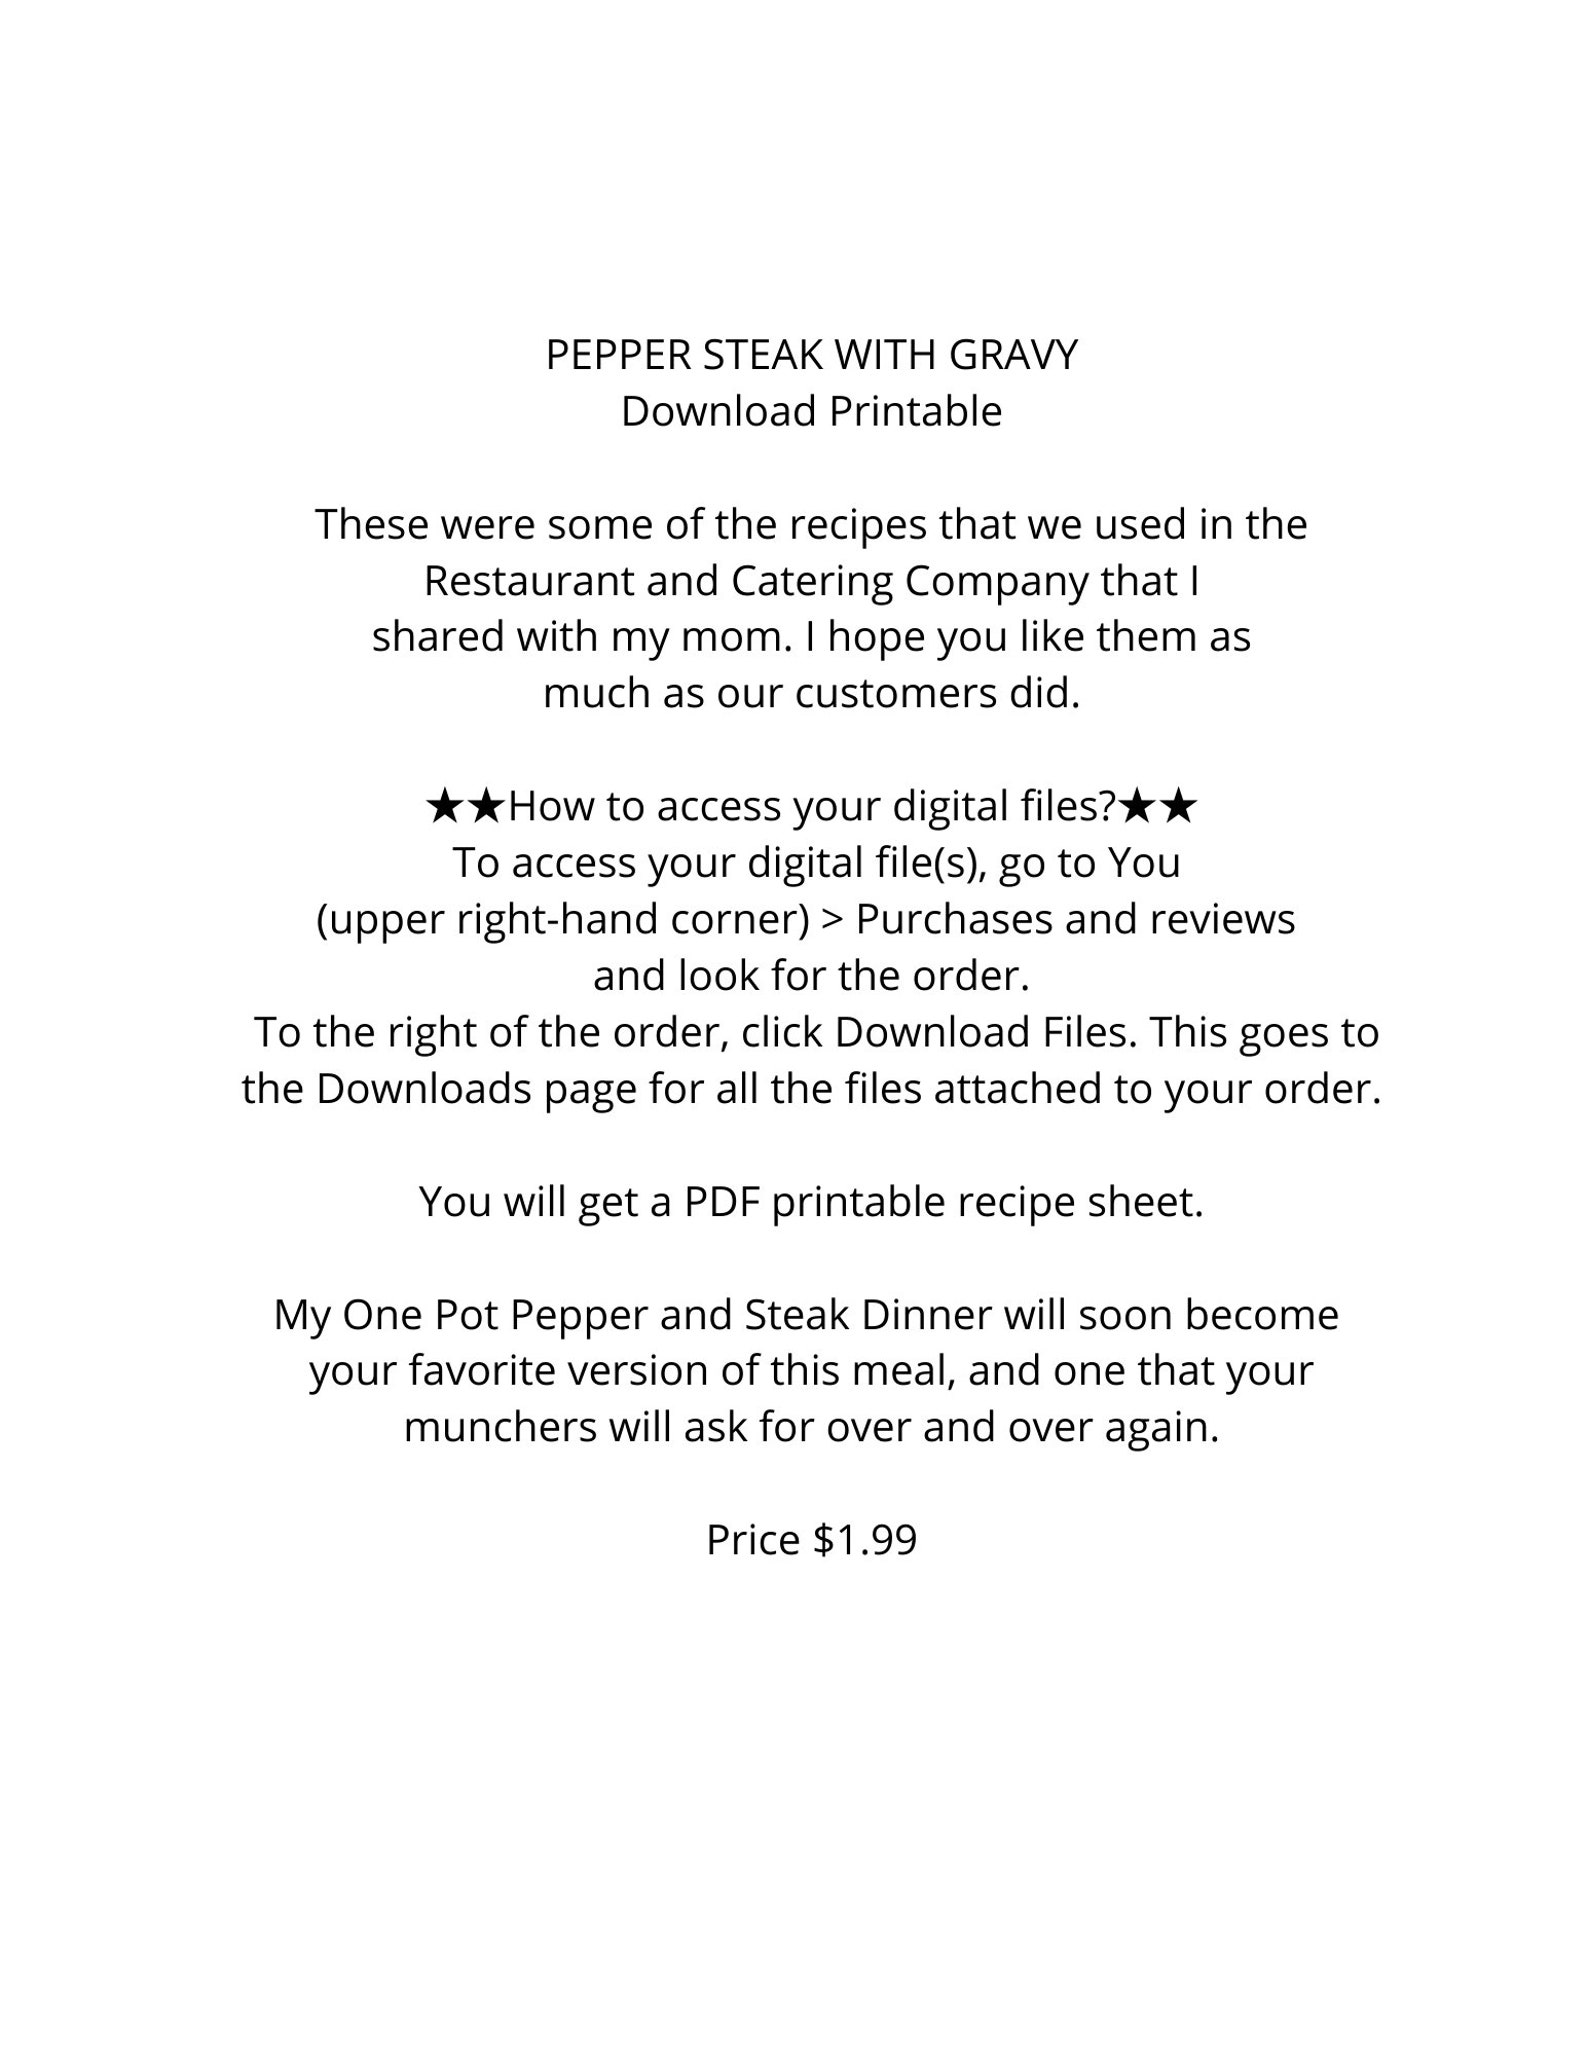 Pepper Steak With Gravy - Etsy